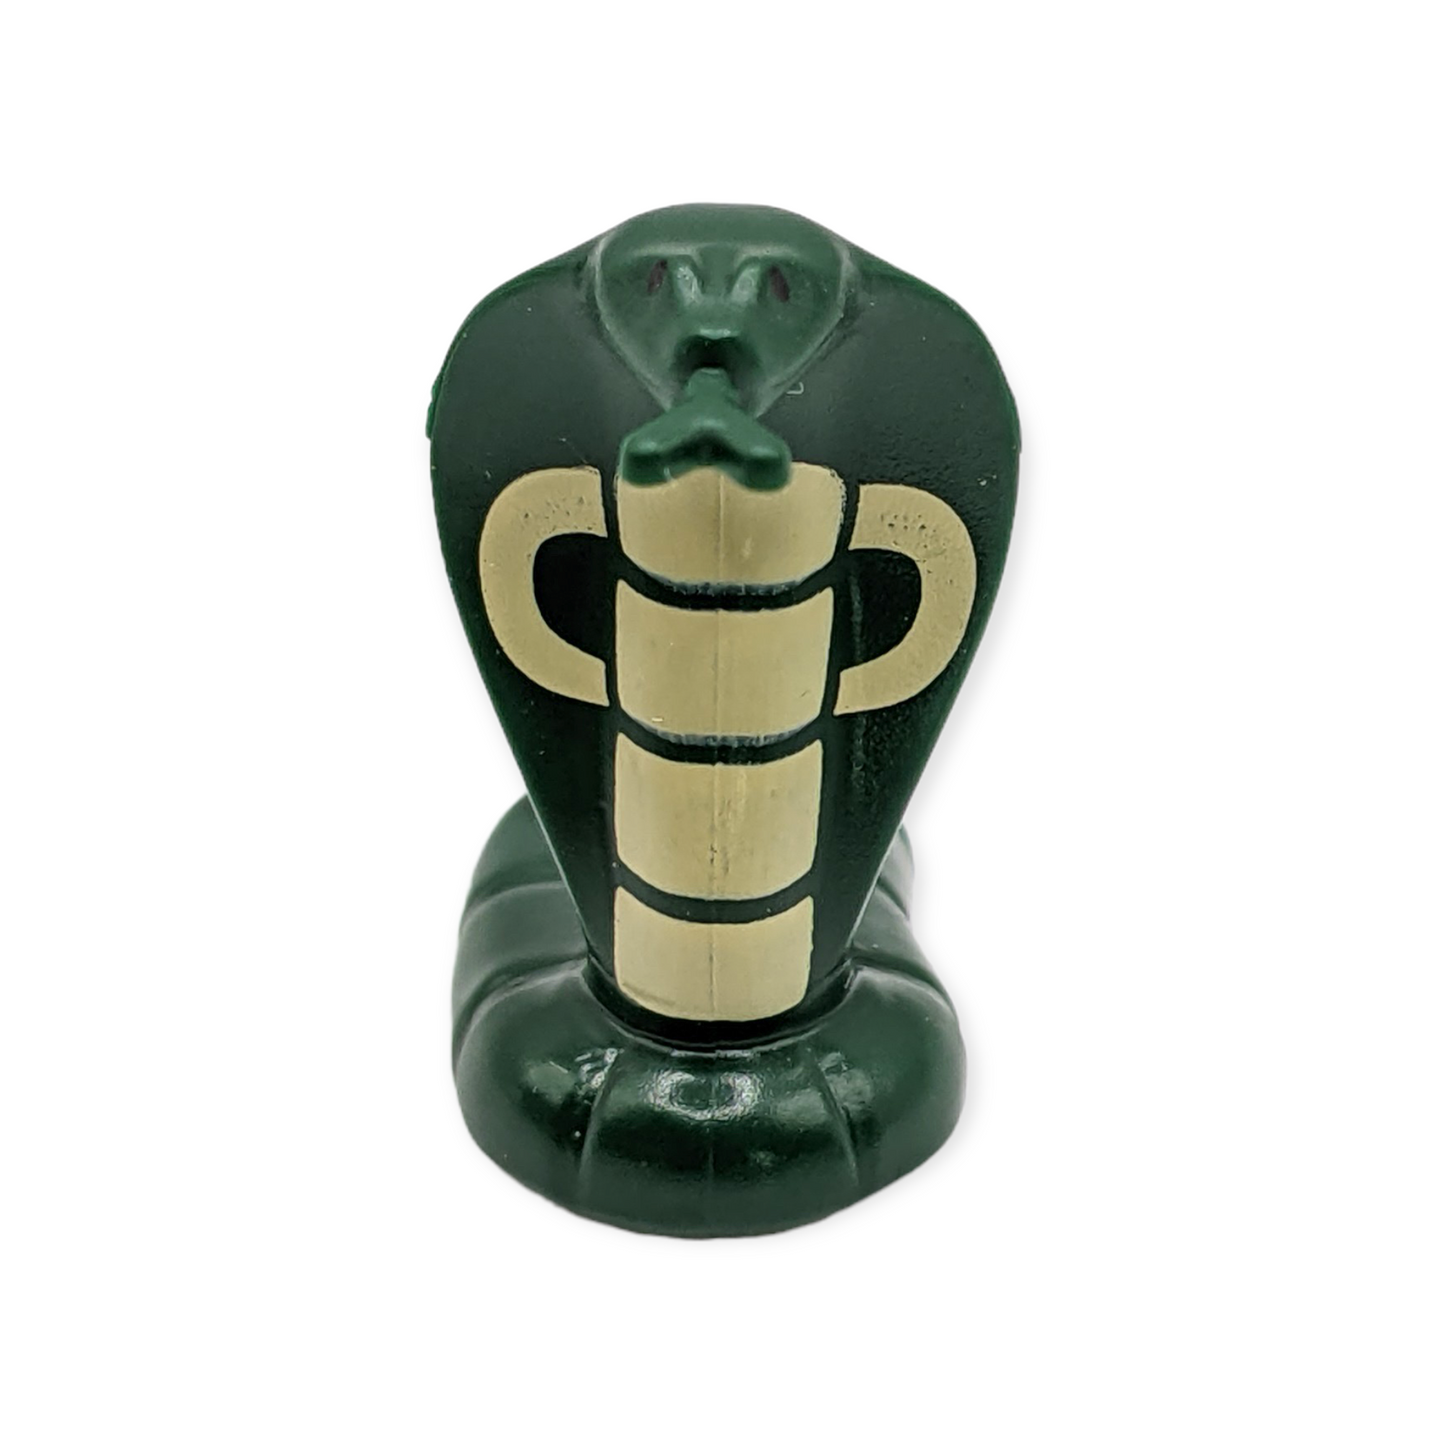 LEGO - Schlange / Cobra in Dark Green